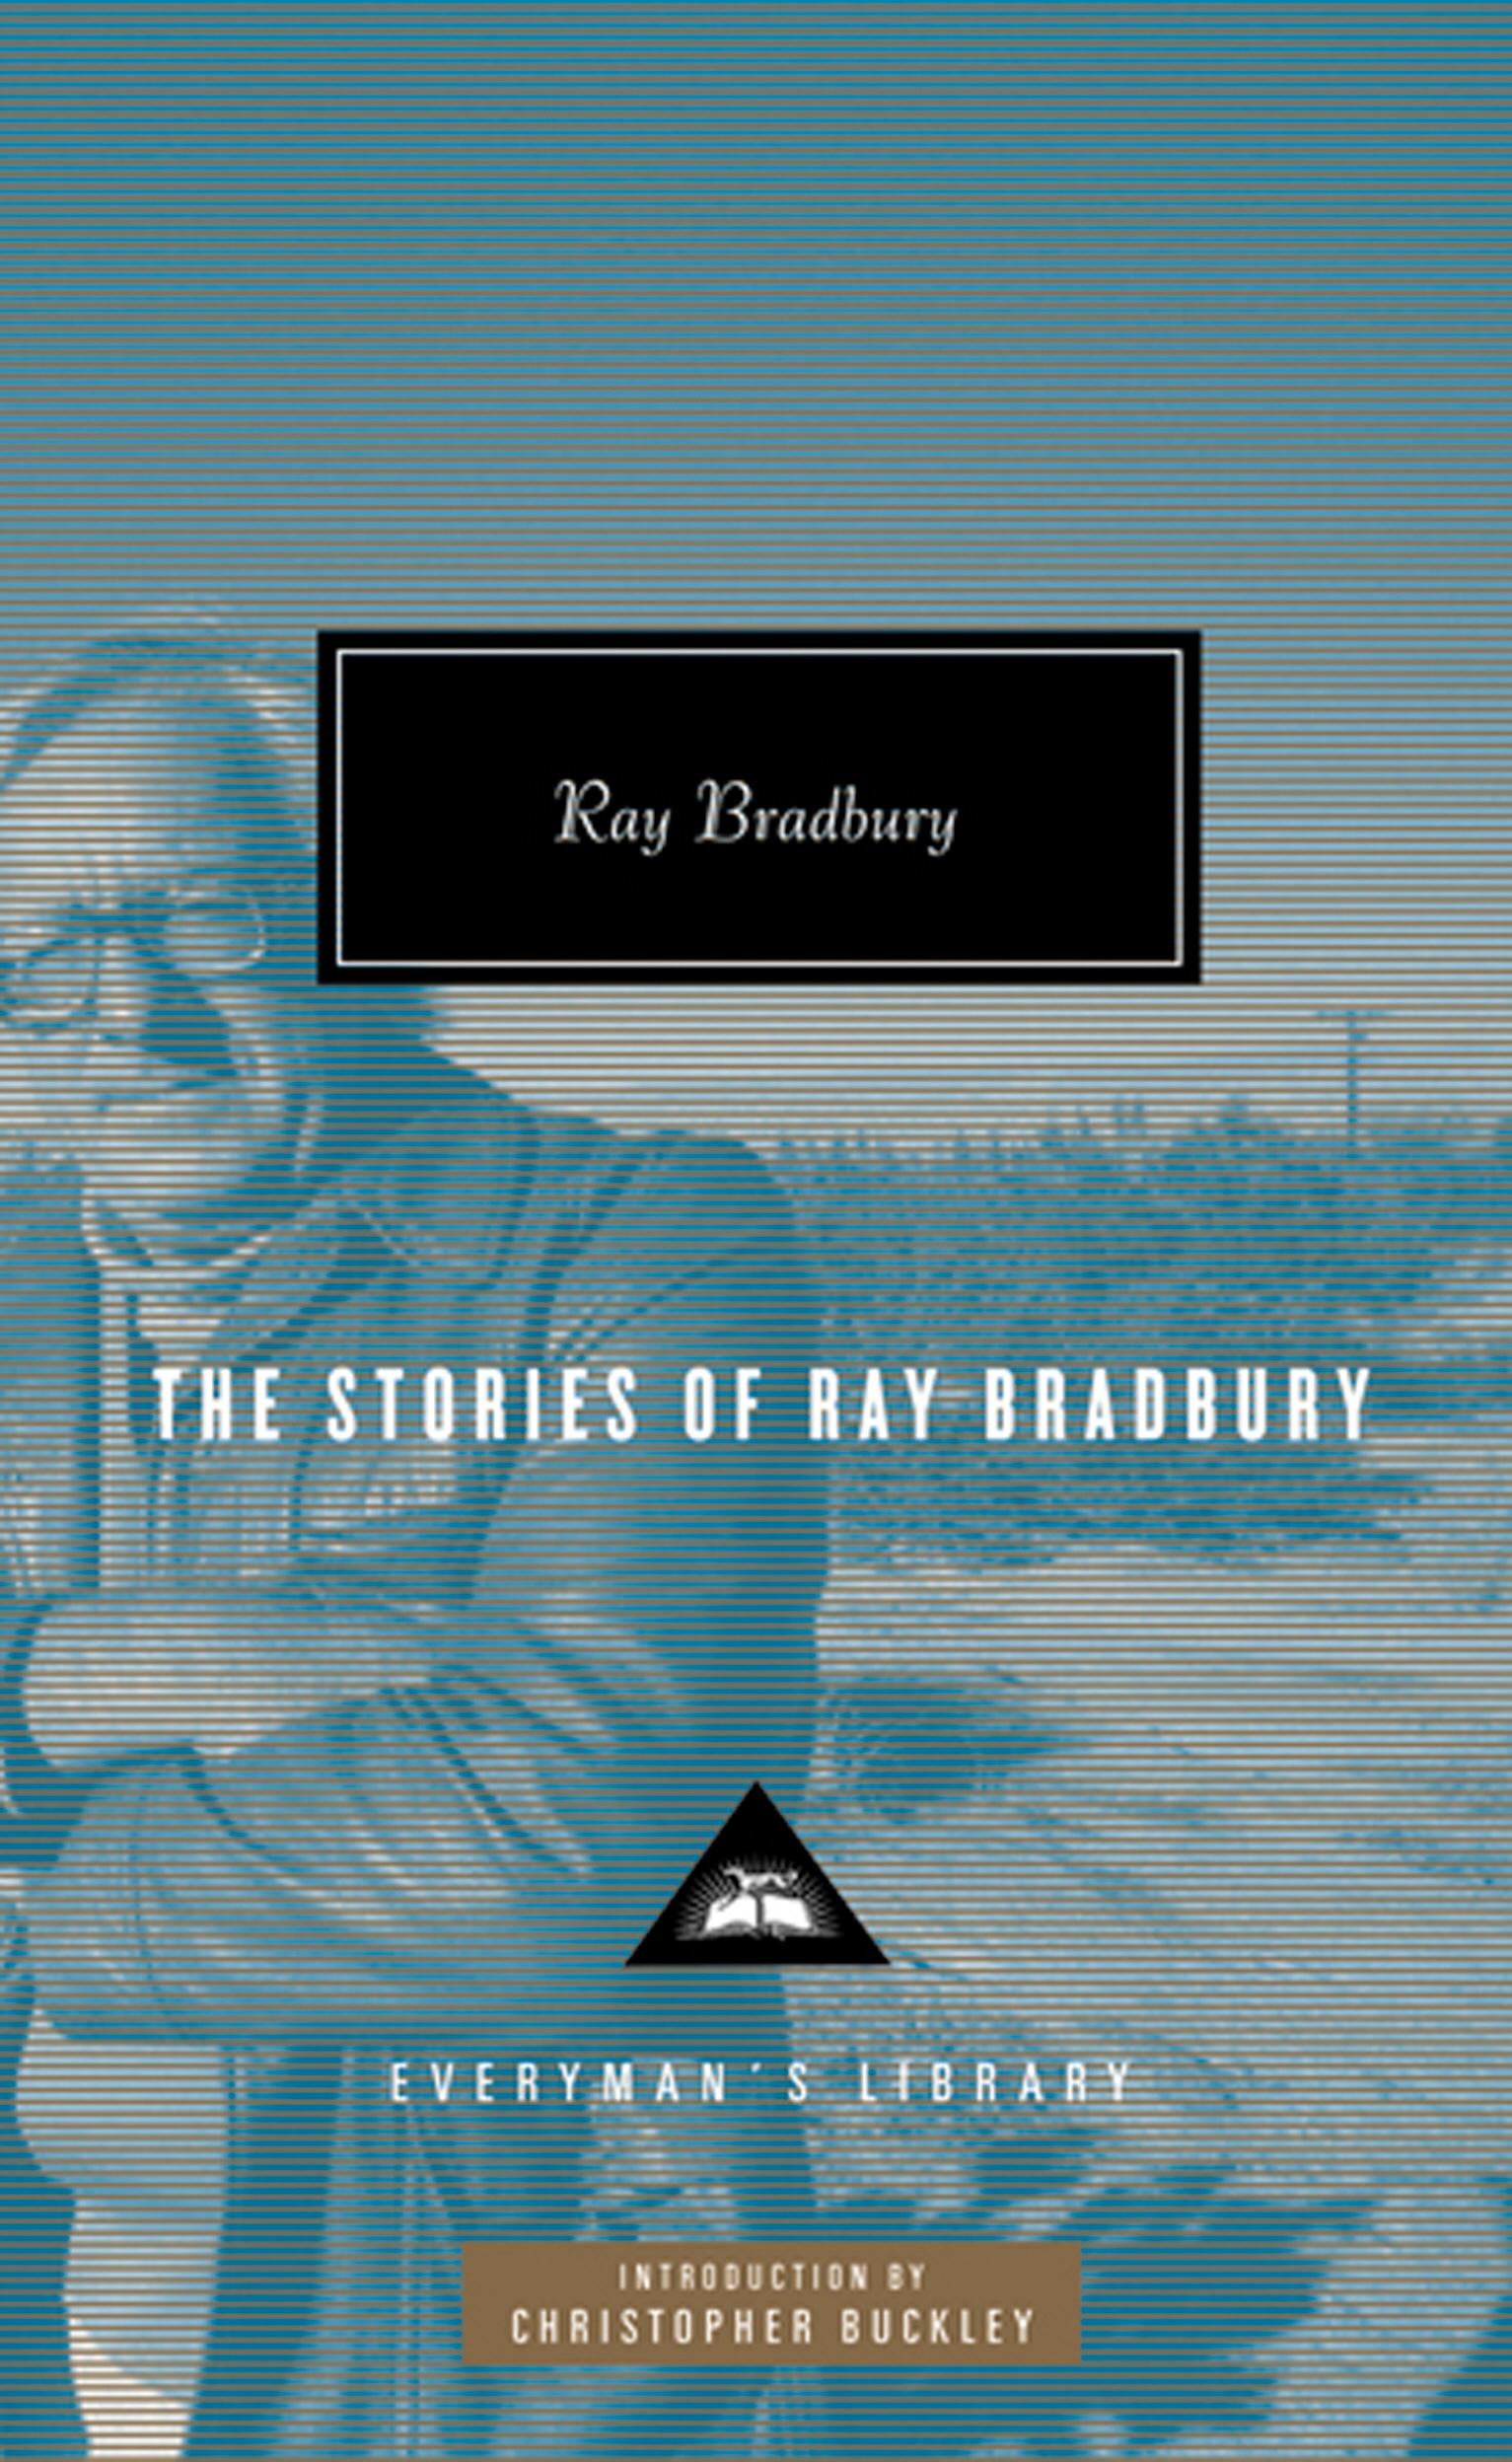 Book “The Stories of Ray Bradbury” by Ray Bradbury — April 30, 2010